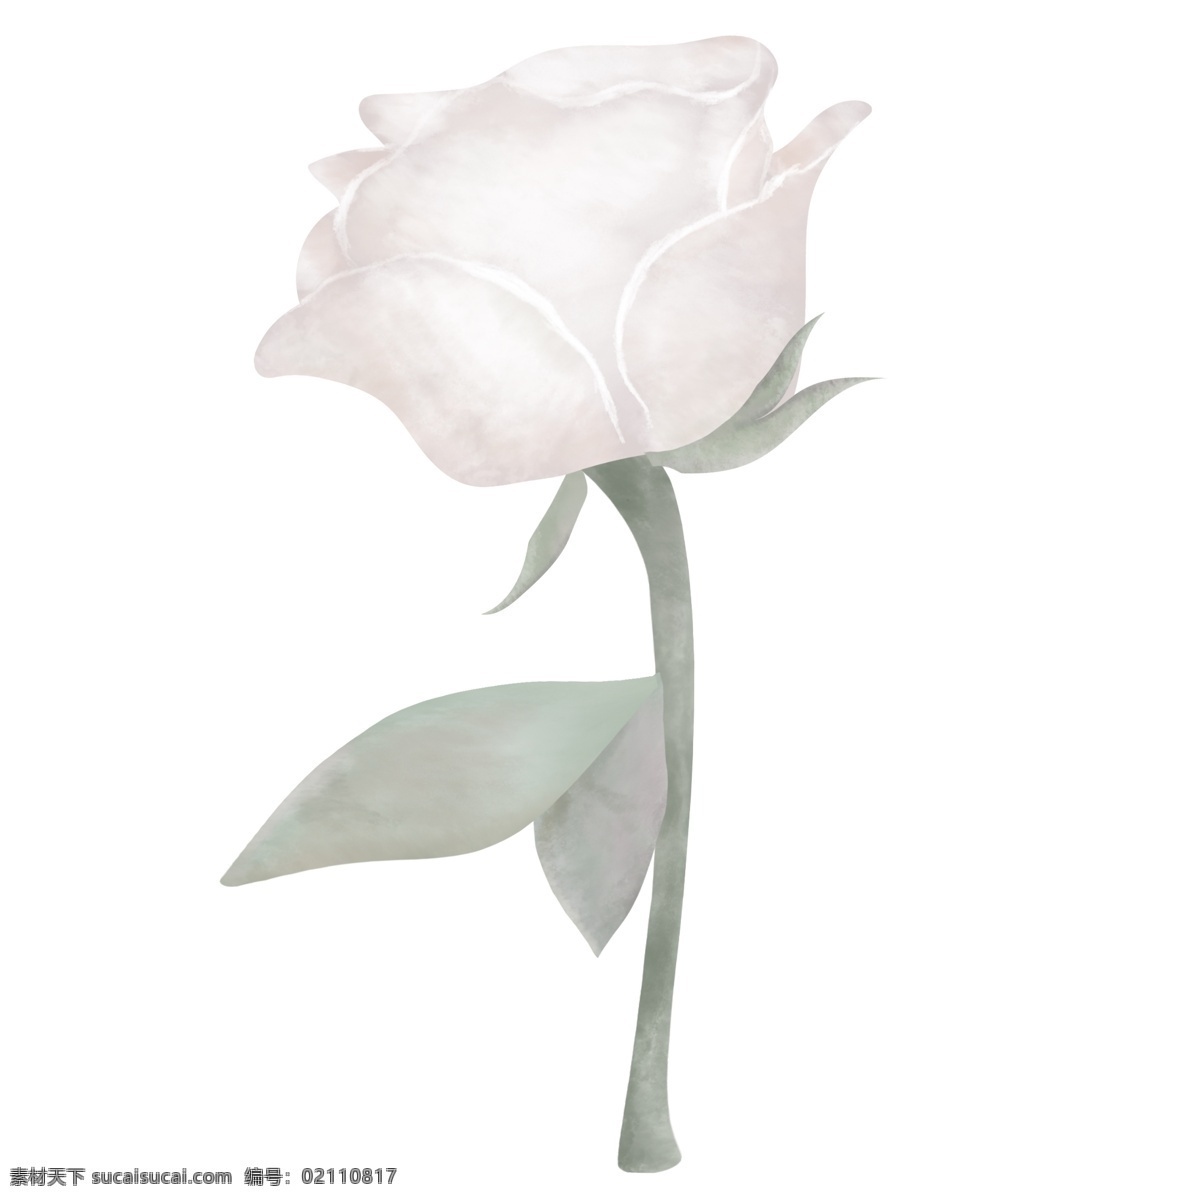 典雅 手绘 白色 玫瑰花 白玫瑰 植物 花朵 清新 玫瑰